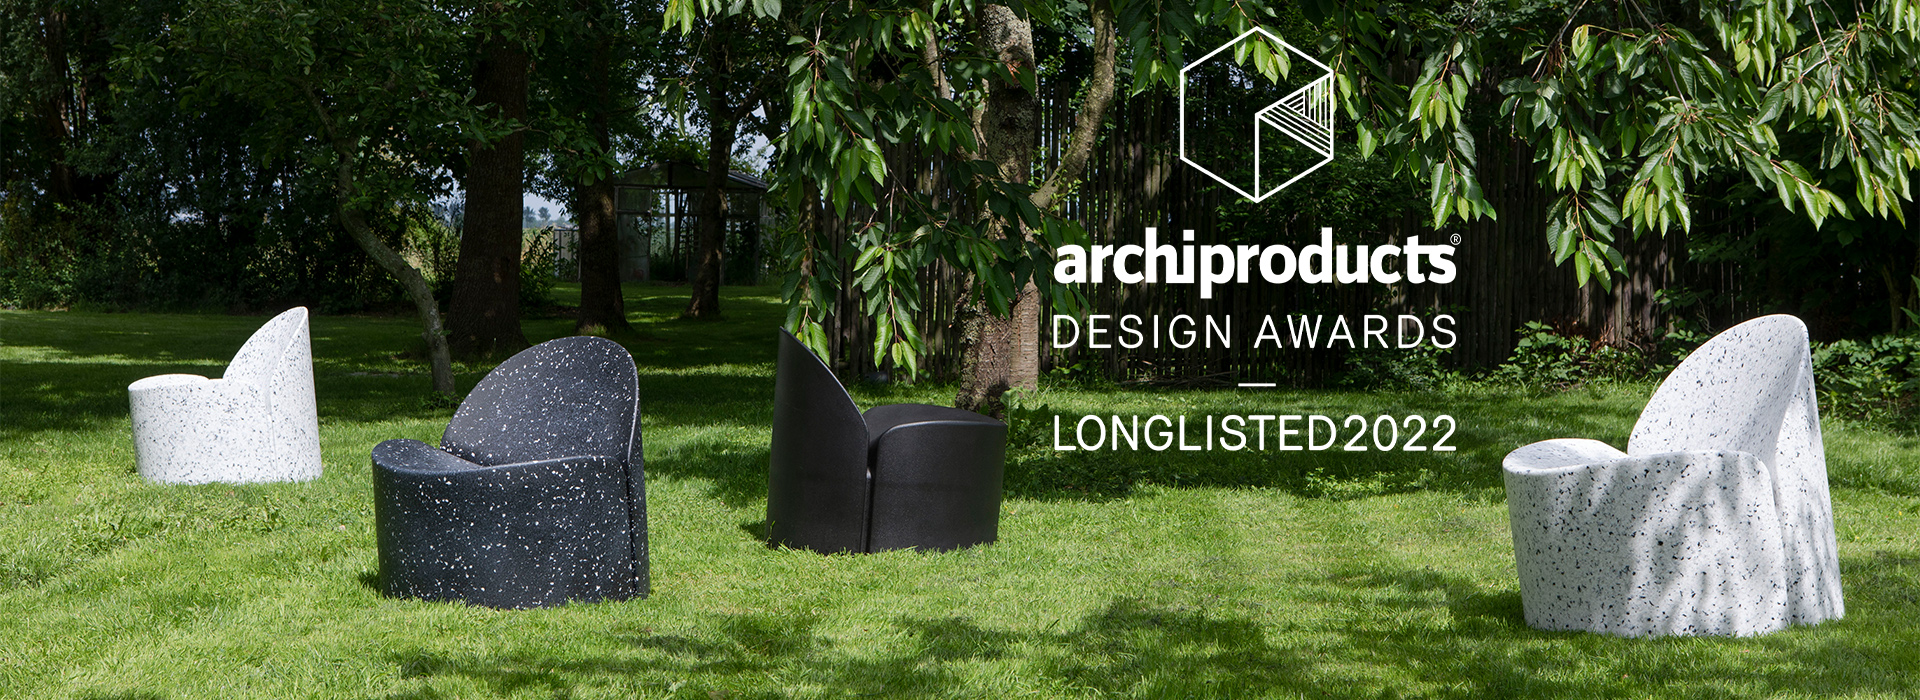 Banne Bloom Chair für die Longlist der Archiproducts Design Awards 2022 nominiert 